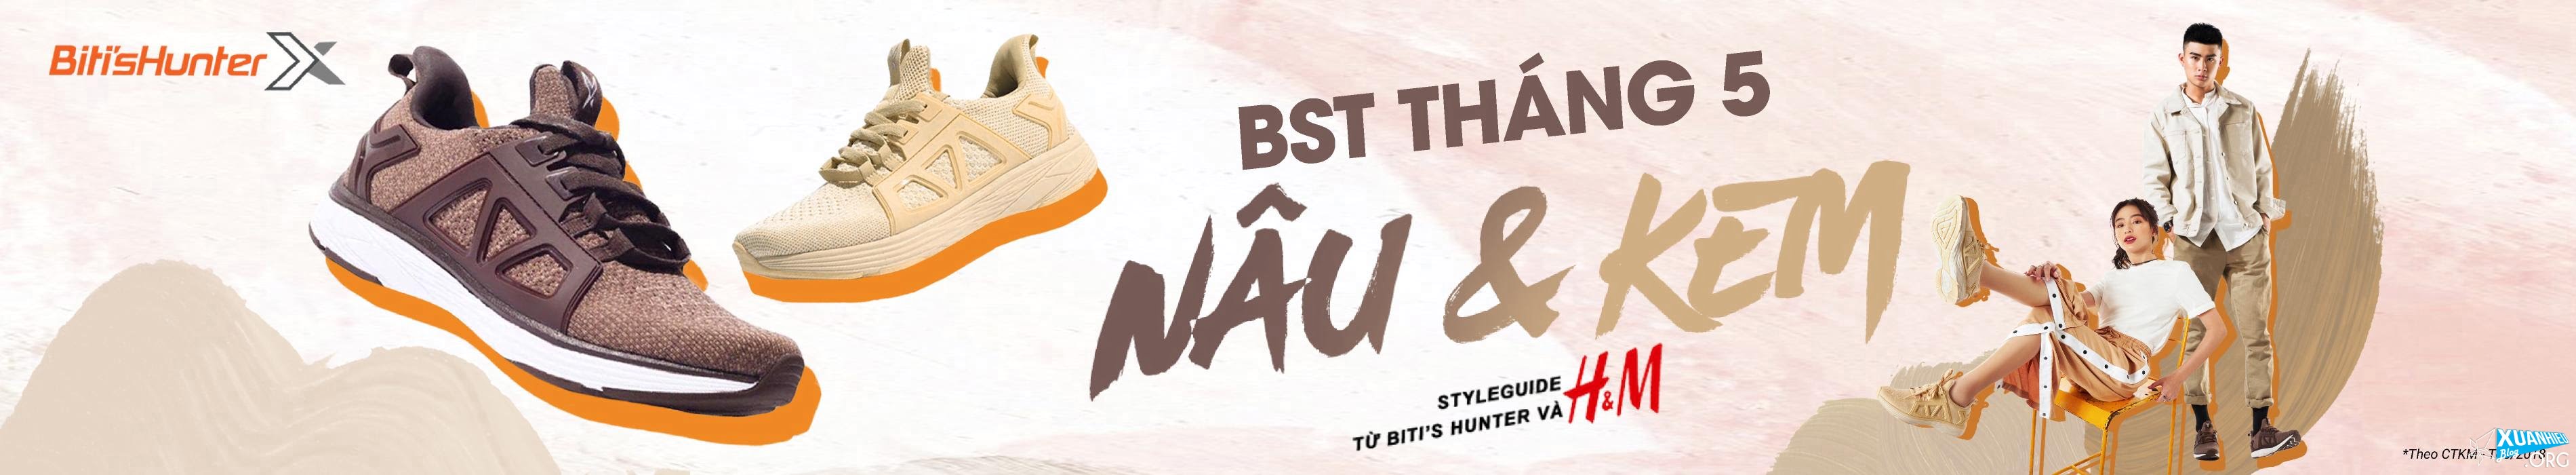 bitis hunter x2 premium nau kem thang 5 2018 1 - Biti's Hunter X2 Premium phiên bản Nâu & Kem mới ra mắt tháng 5/2018: Chất dã man